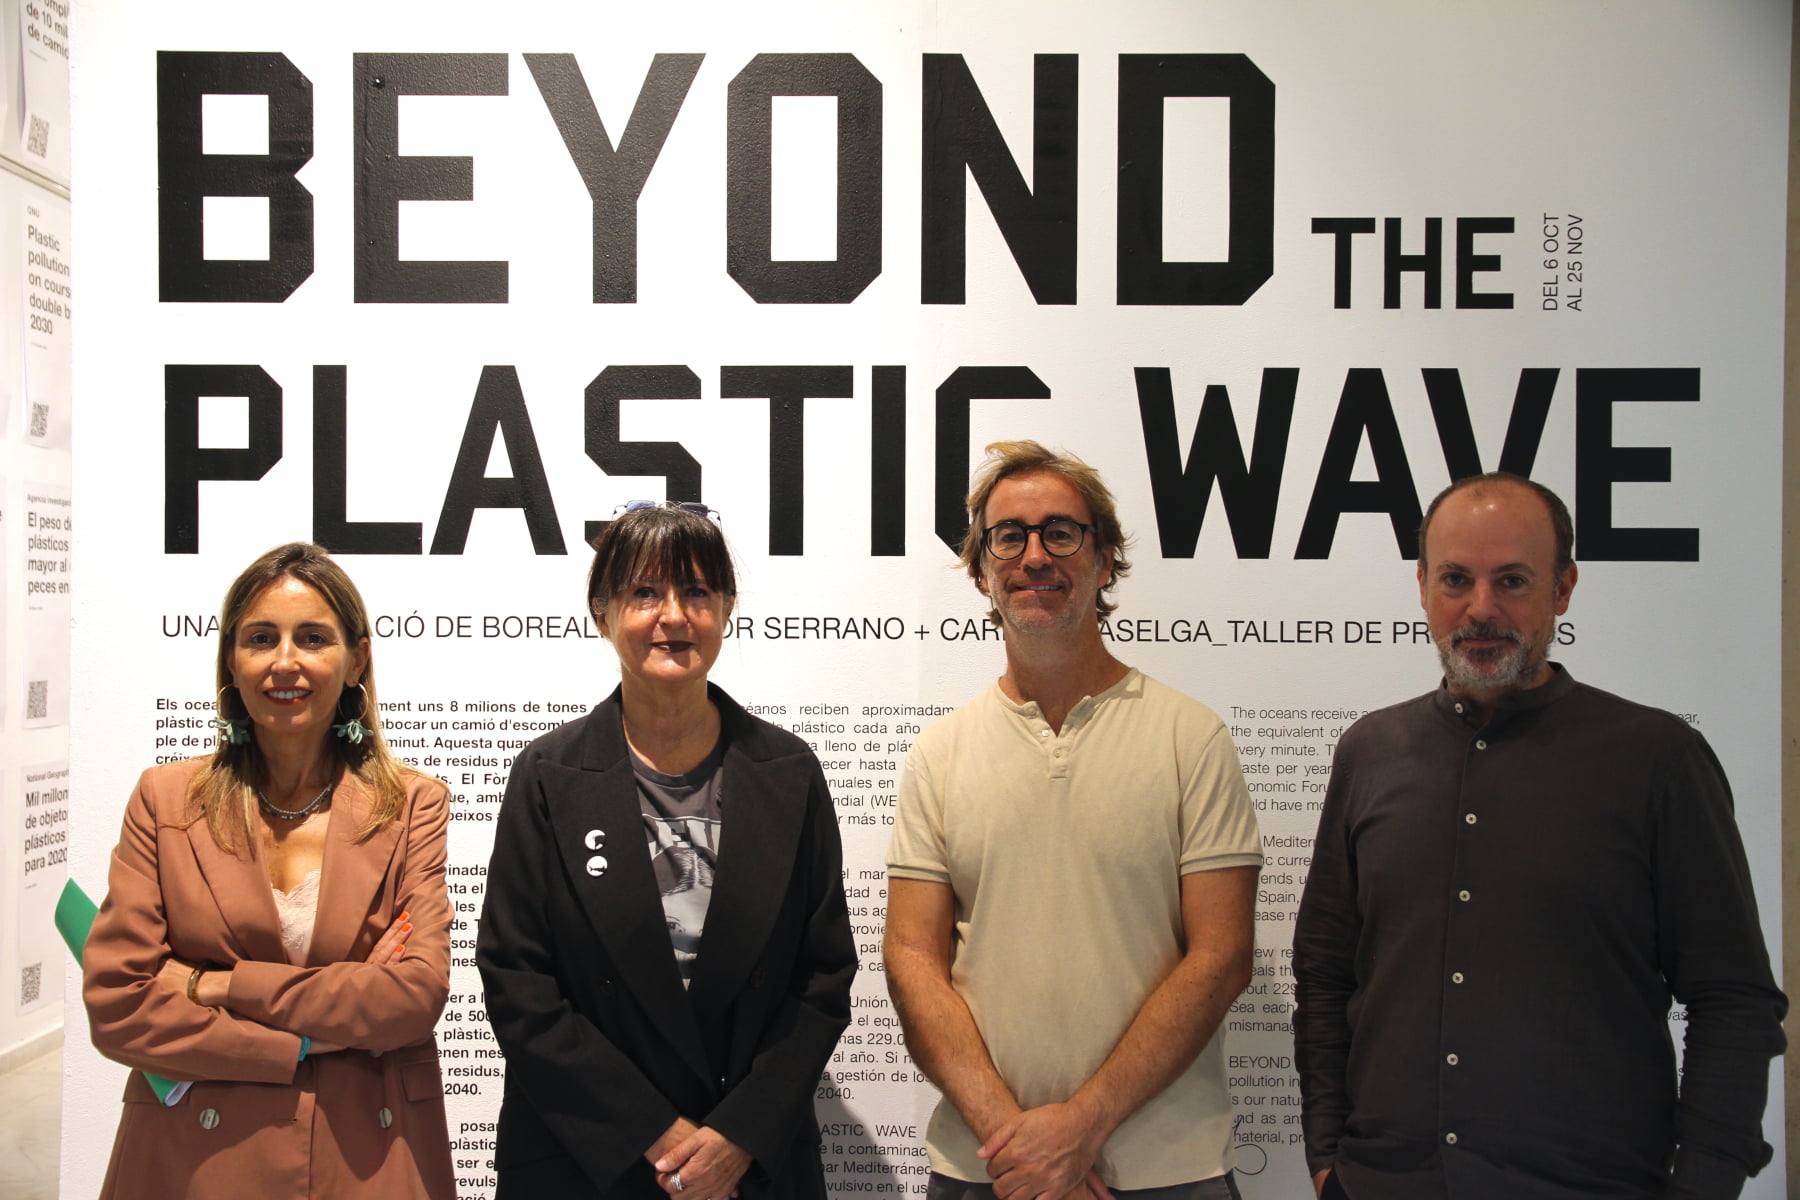 Foto dels responsables de la Expo Beyond the plastic wave